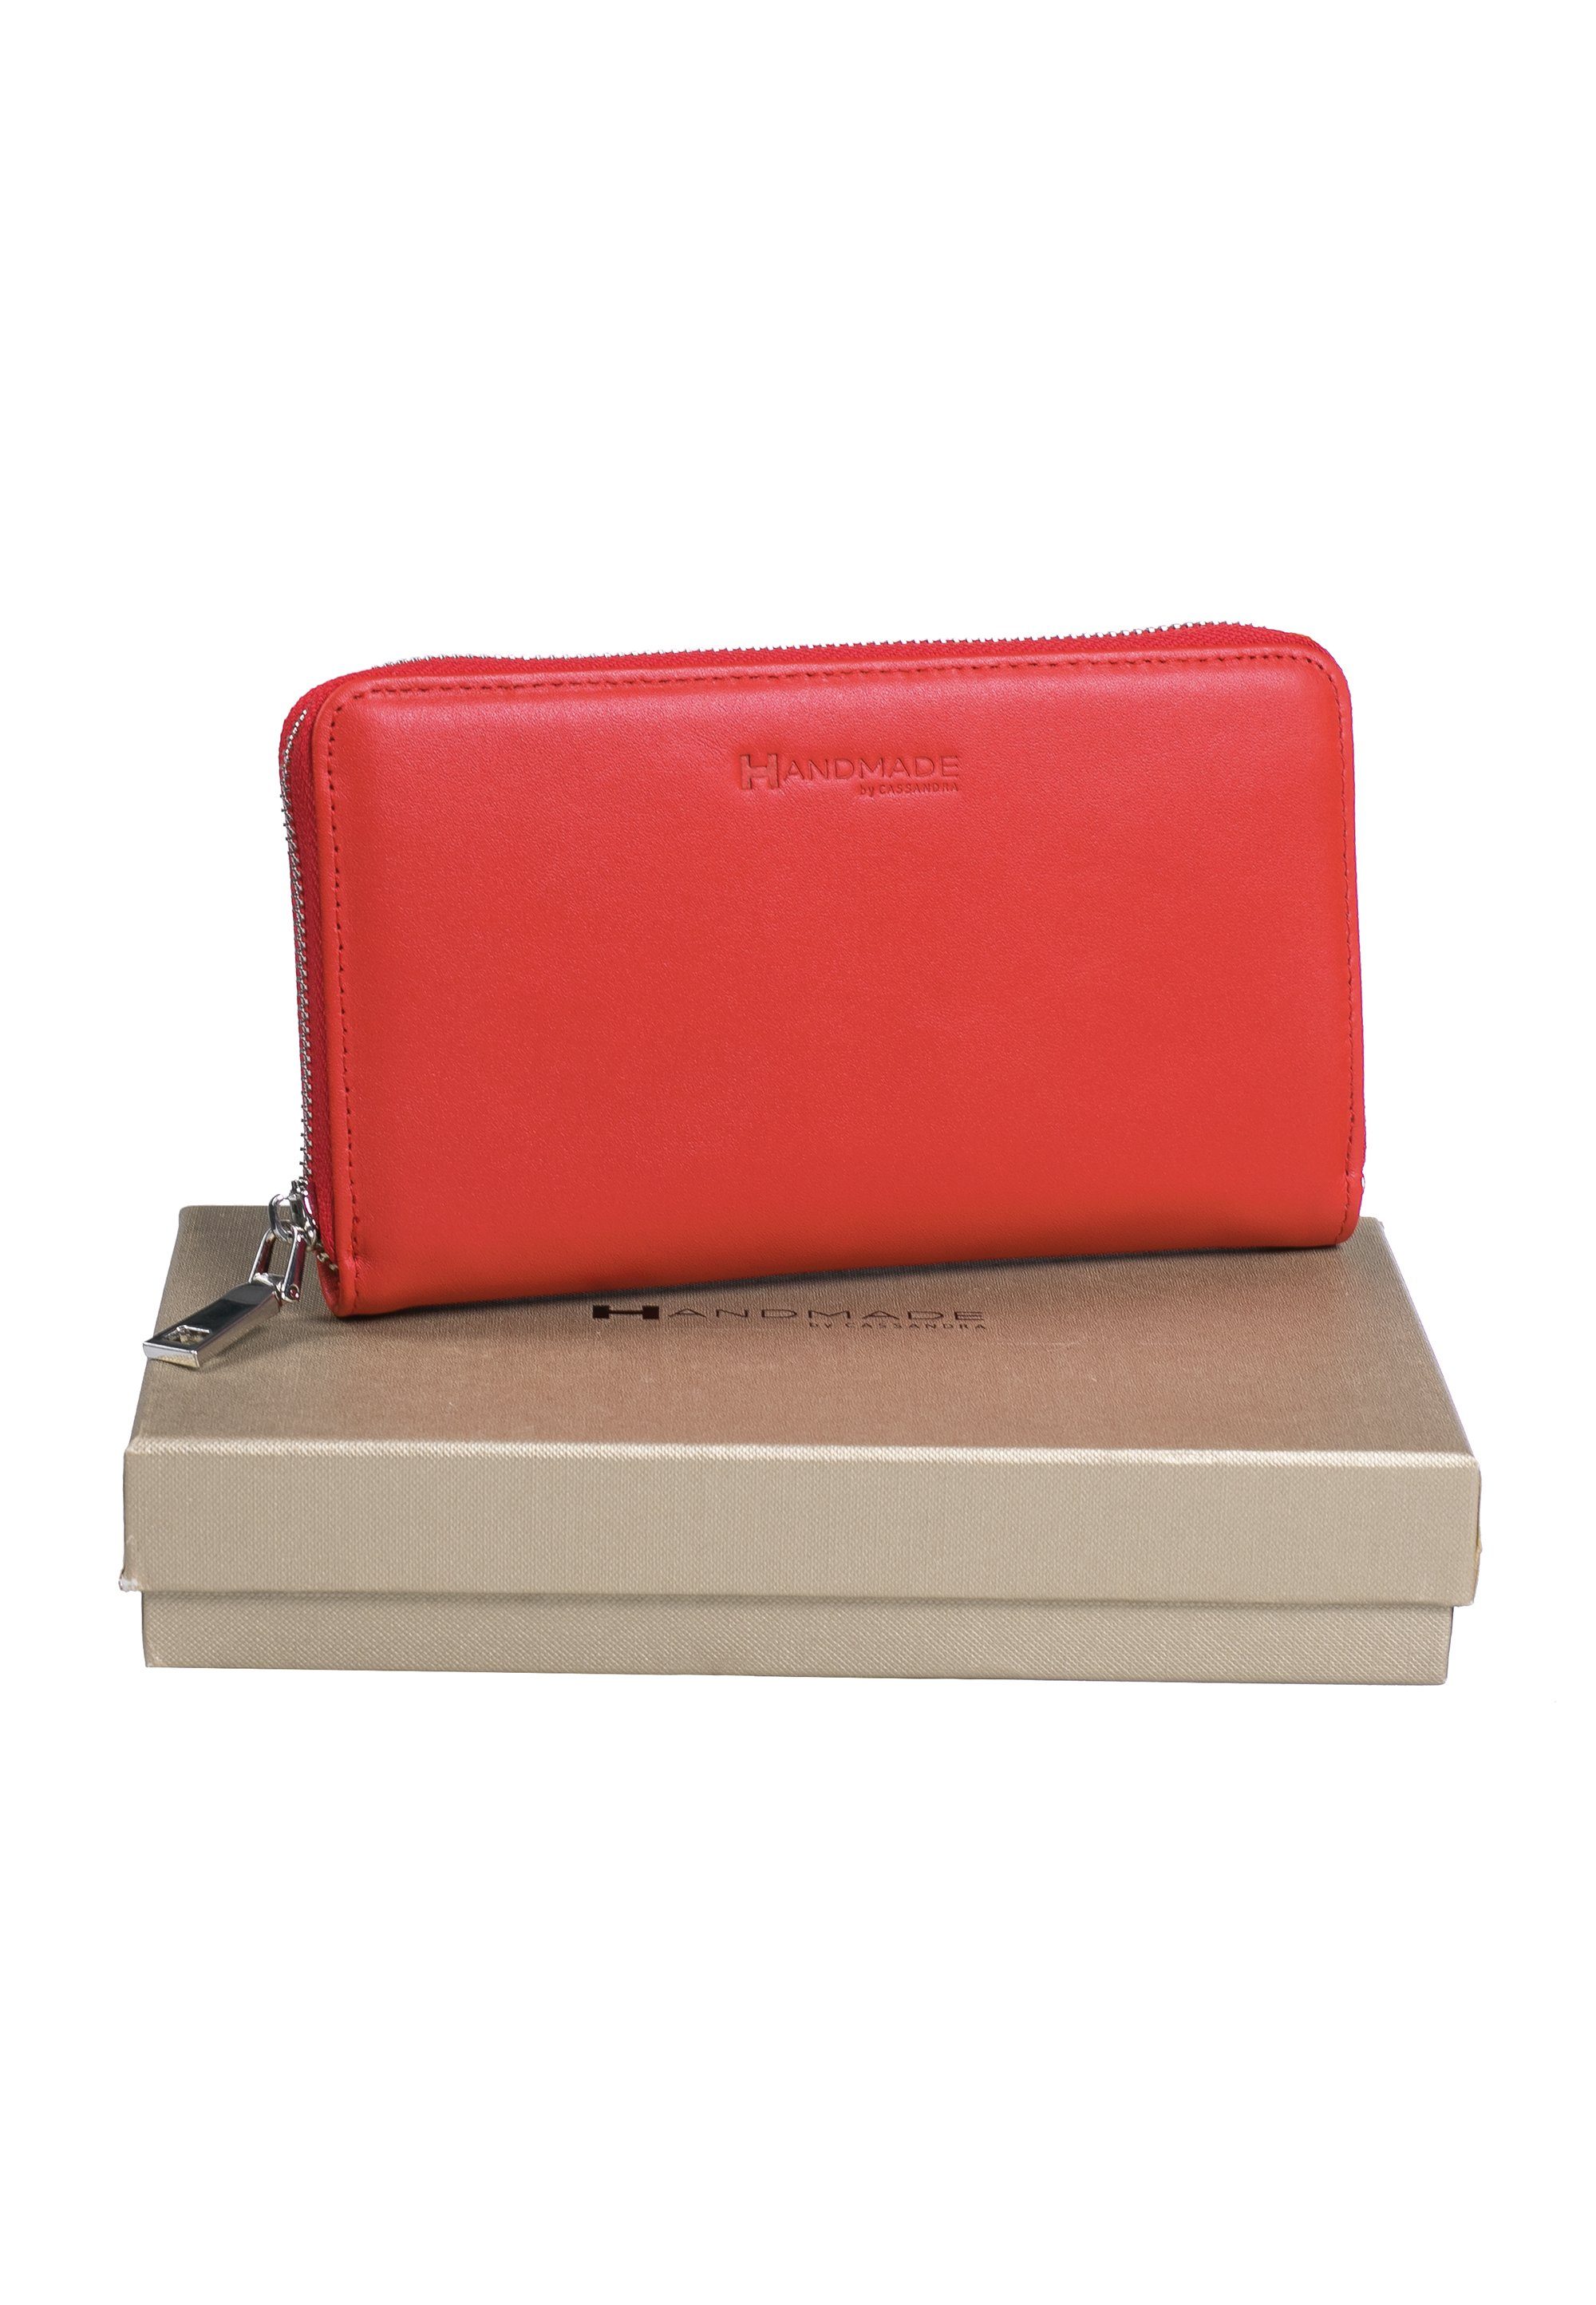 ECHT rot LEDER by Geldbörse CASSANDRA Portemonnaie, Geldbeutel mit Handmade Geschenkbox,